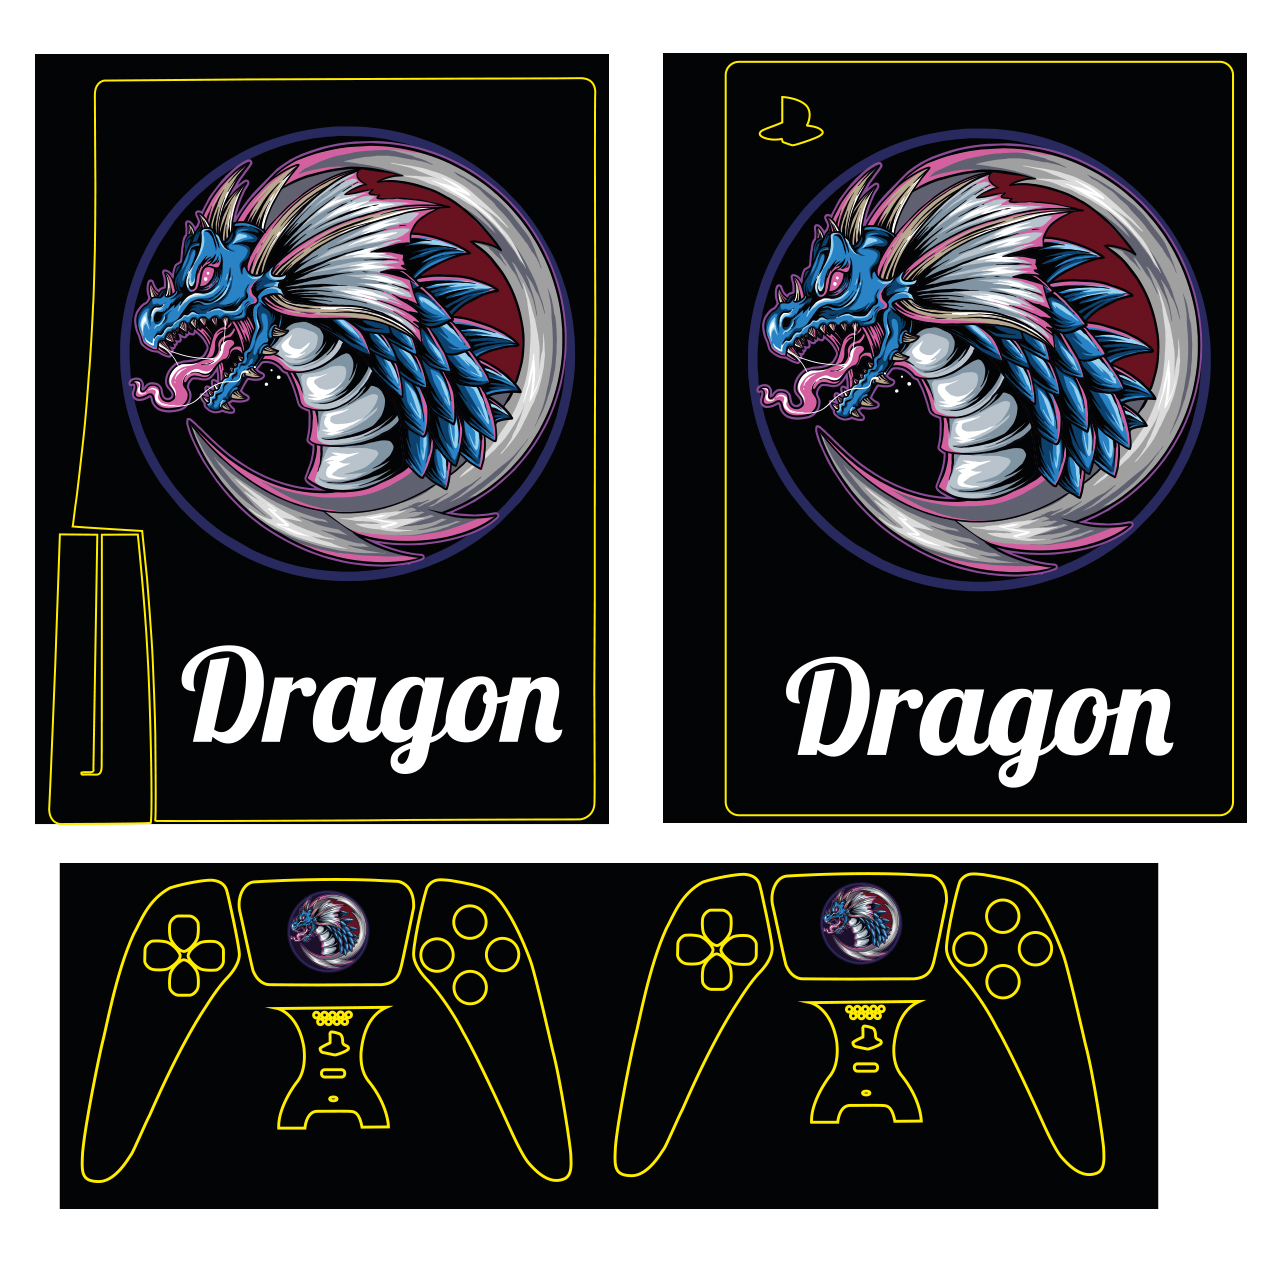 برچسب کنسول بازی پلی استیشن 5 مدل dragon کد 114 مجموعه 4 عددی